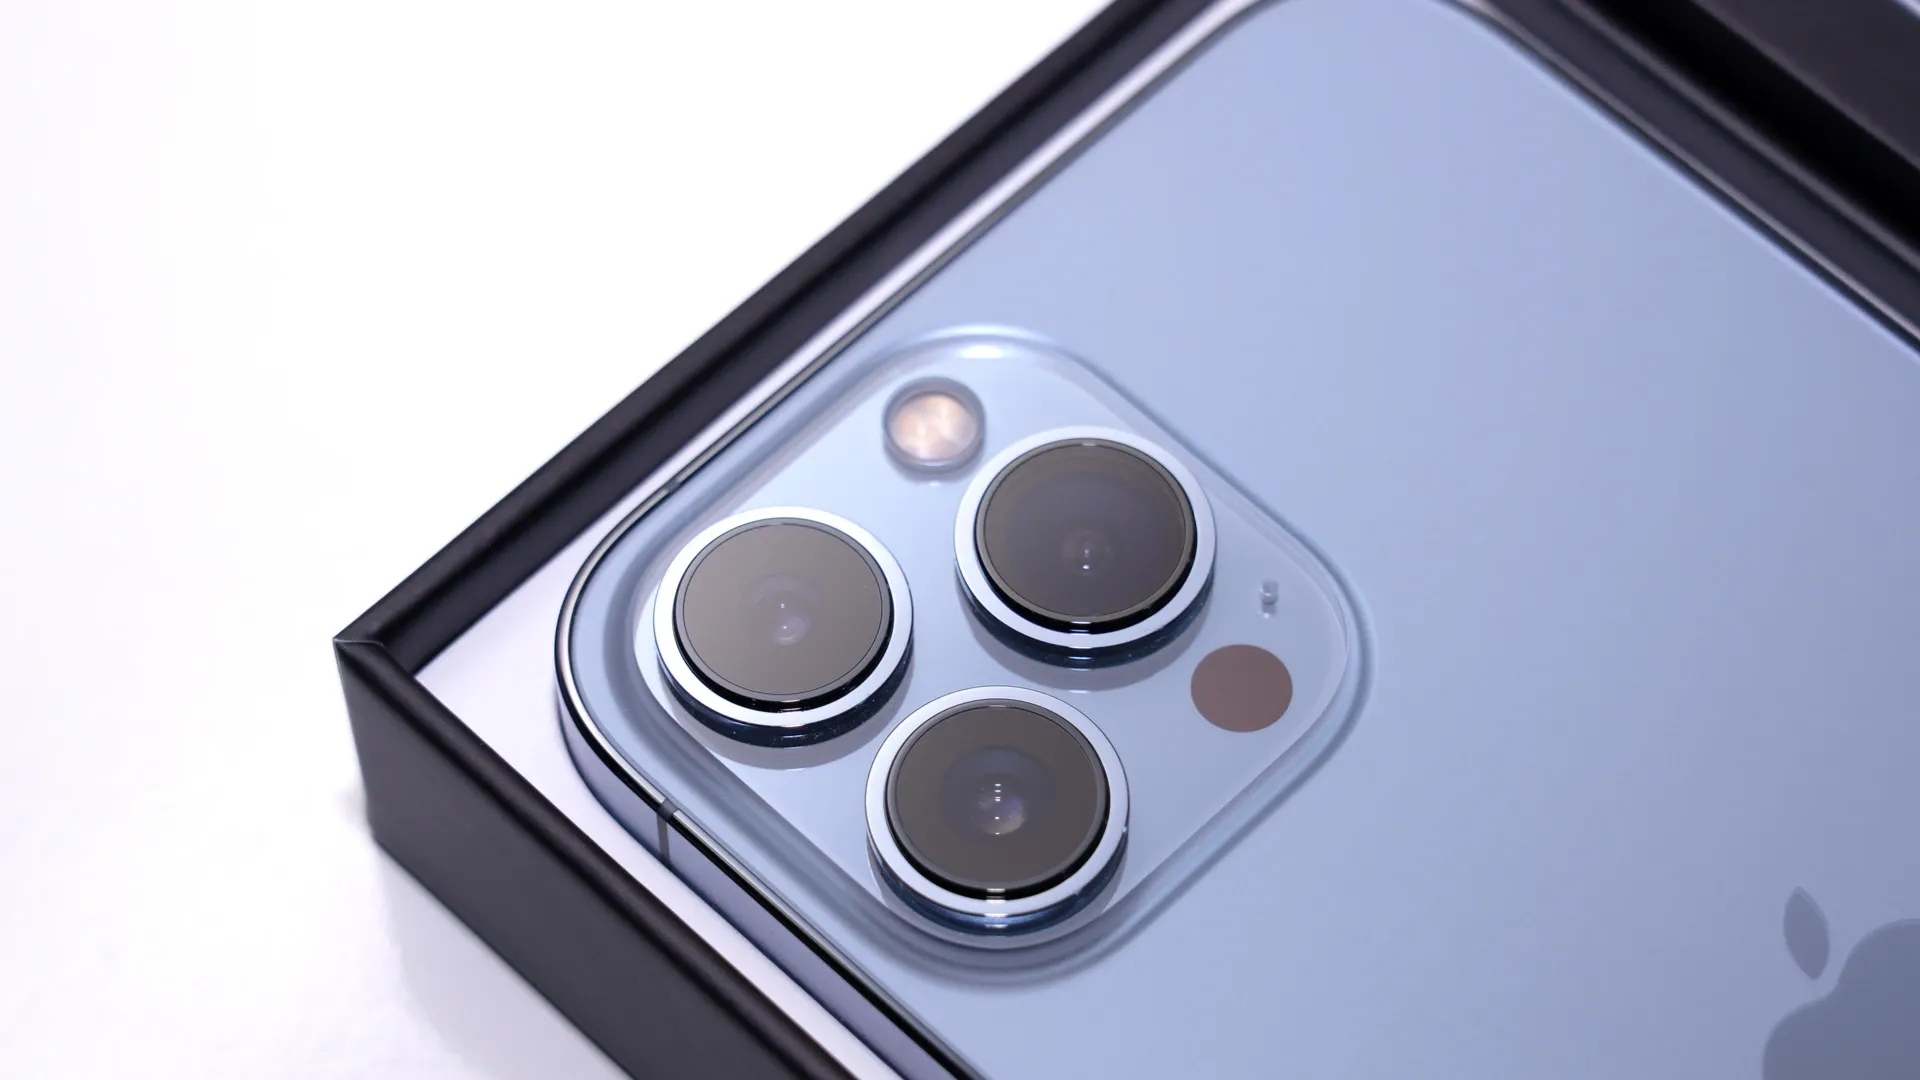 Foto das câmeras do iPhone 13 Pro Max, o celular com melhor câmera da Apple.